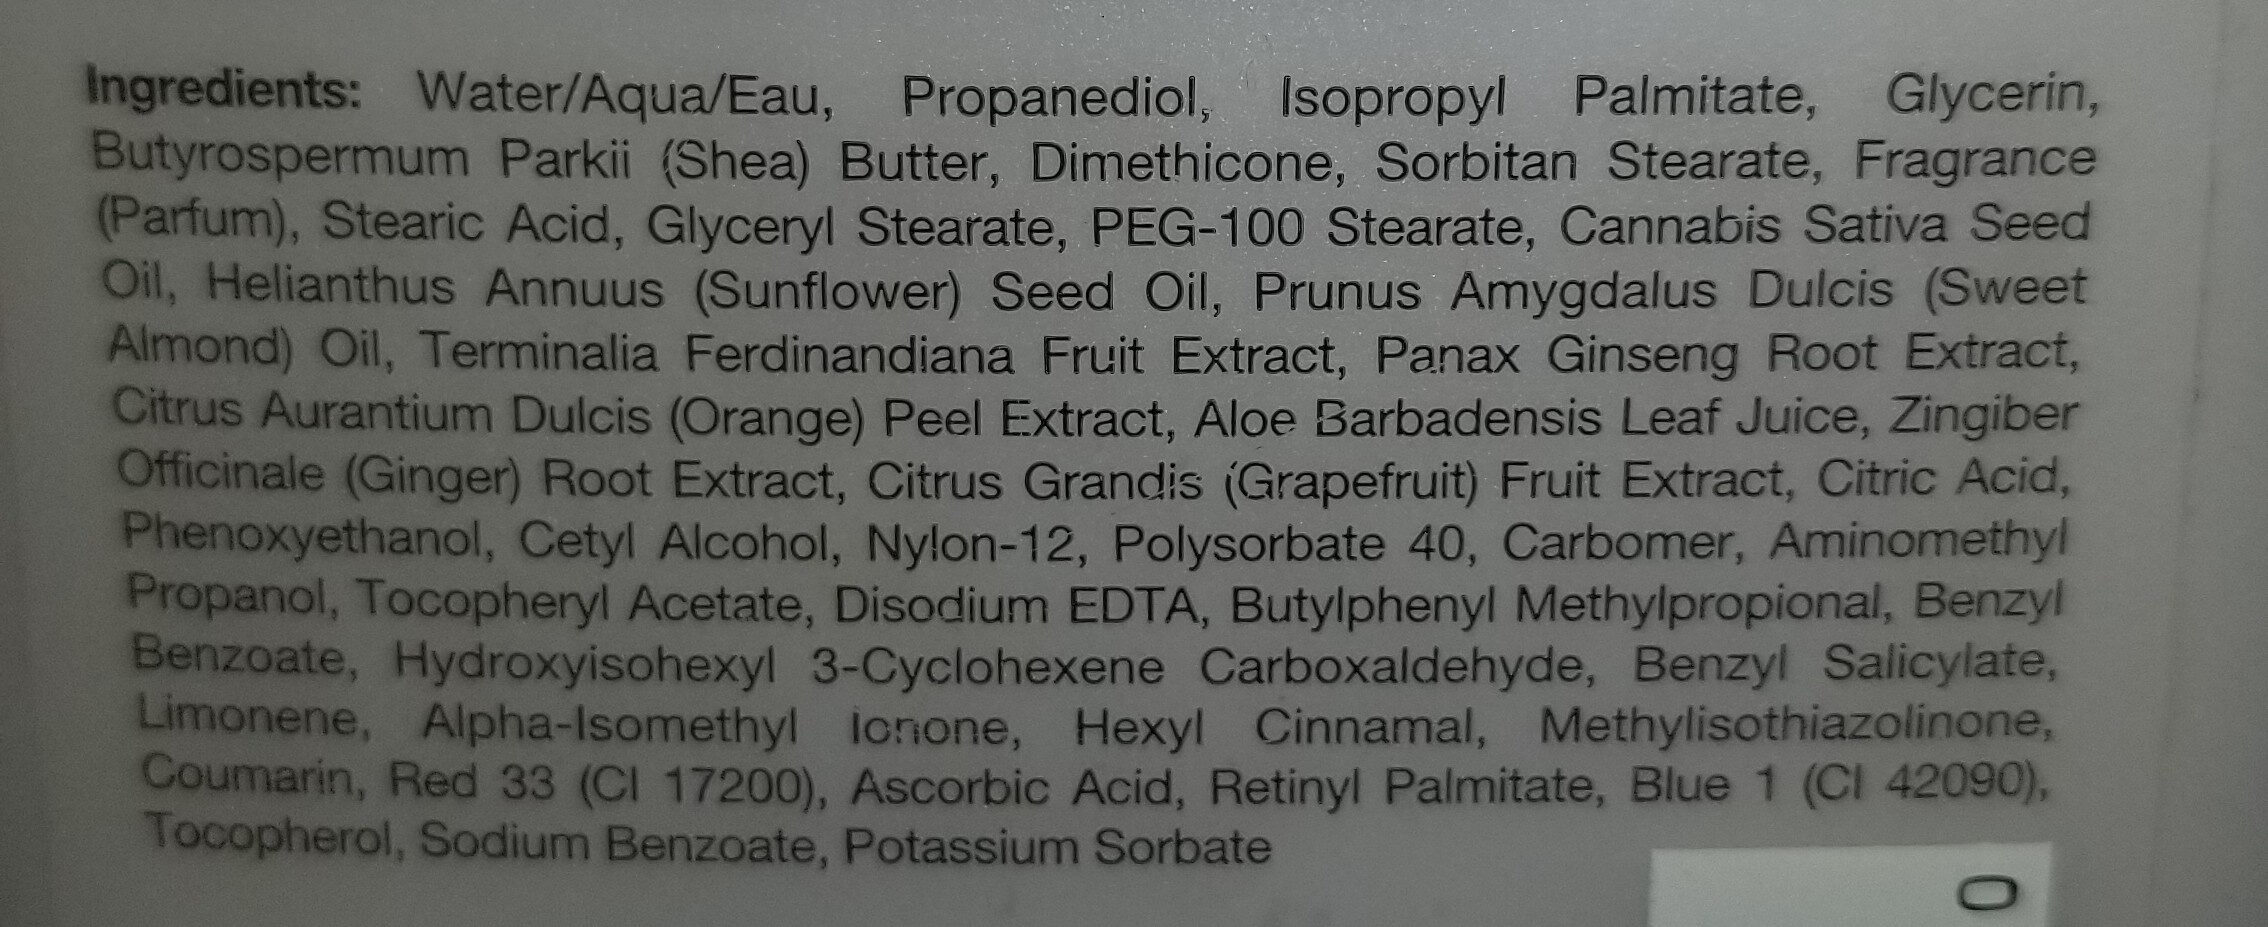 Vanilla Plum Herbal Body Moisturizer - Inhaltsstoffe - en